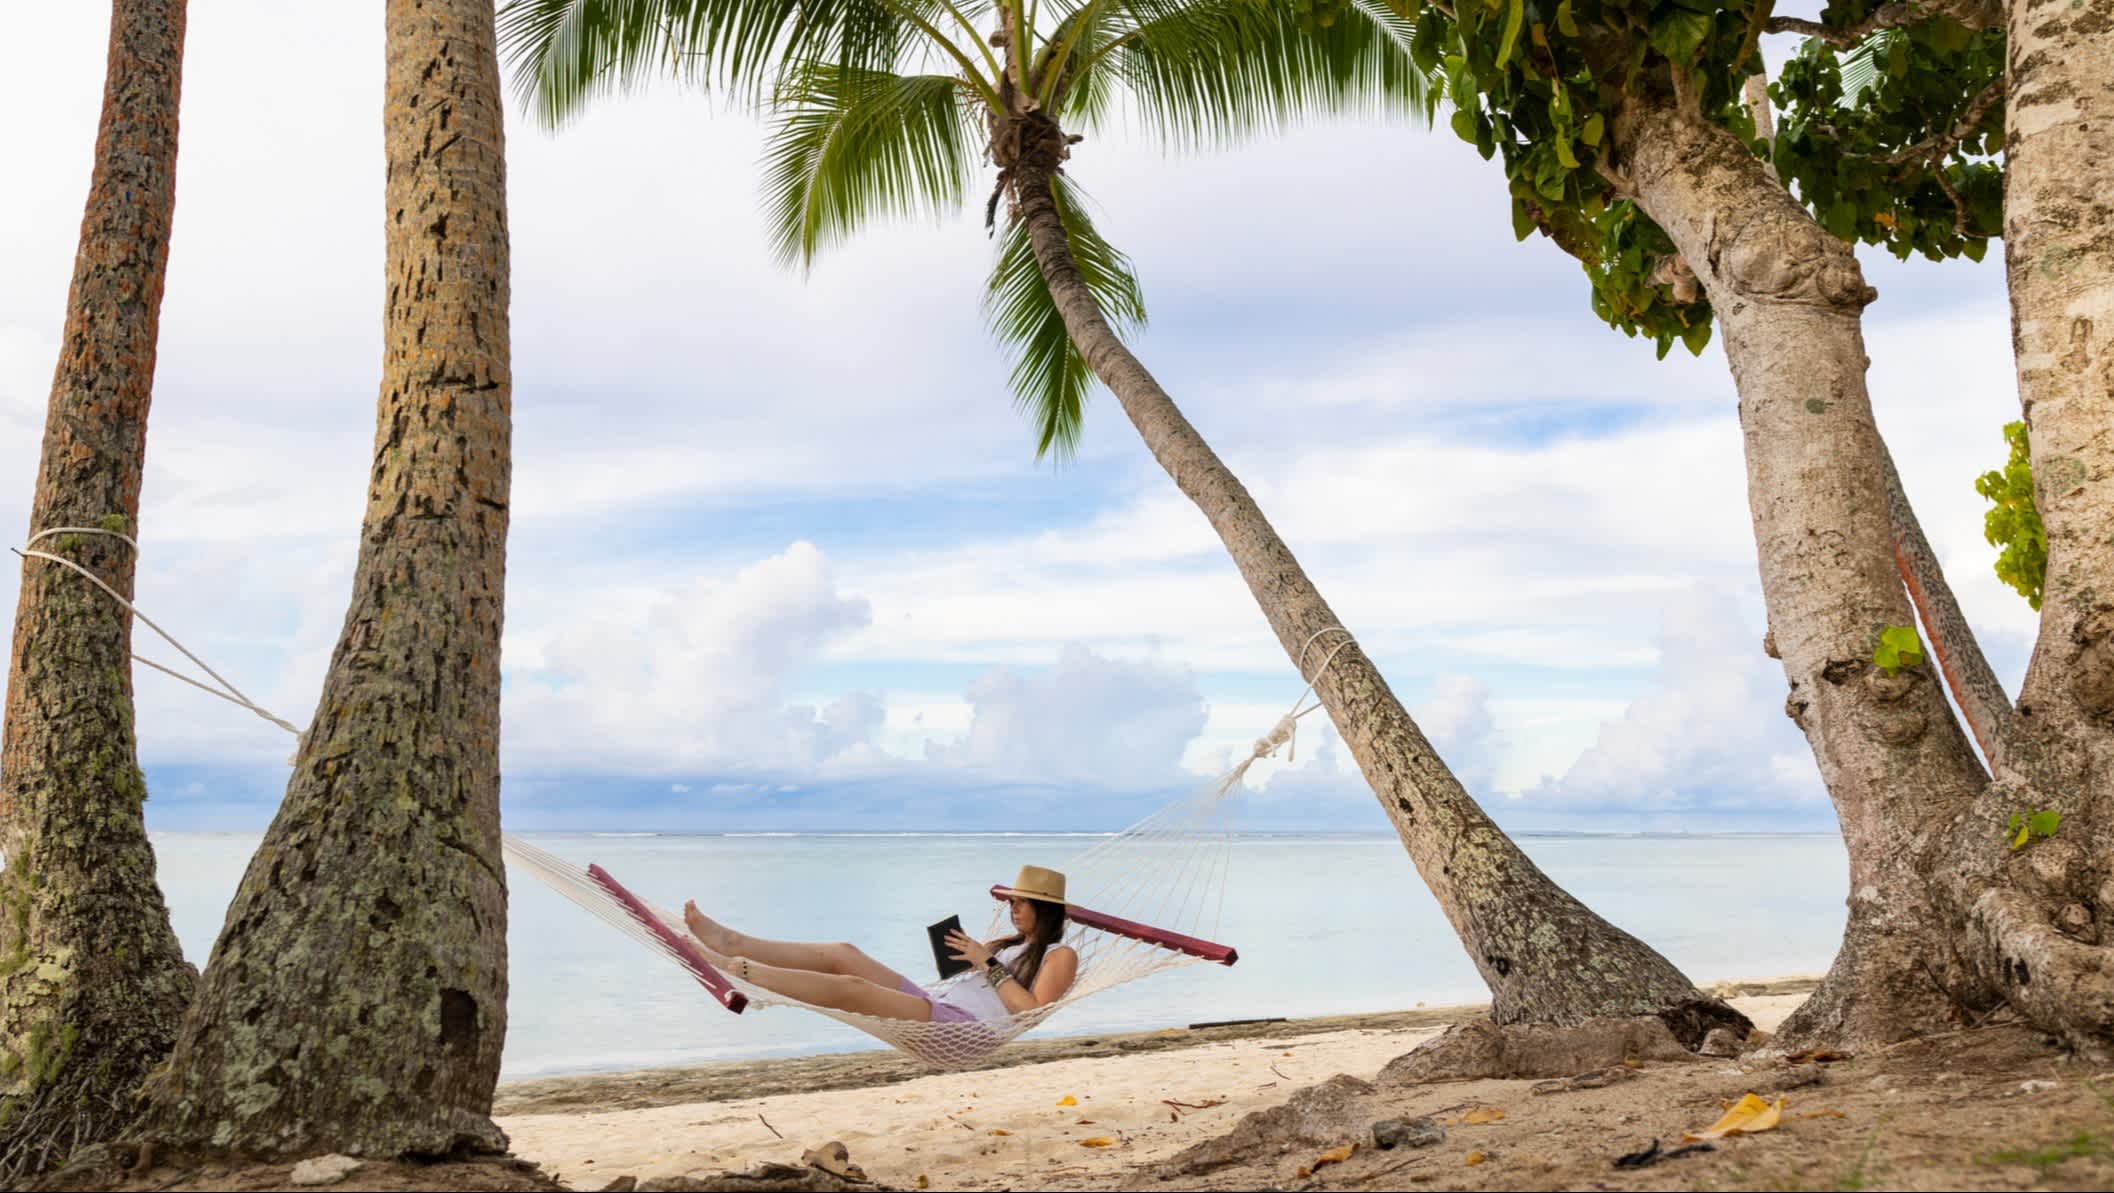 Ein Mann auf der Hängematte, am Strand in Nadi, Fidschi.

